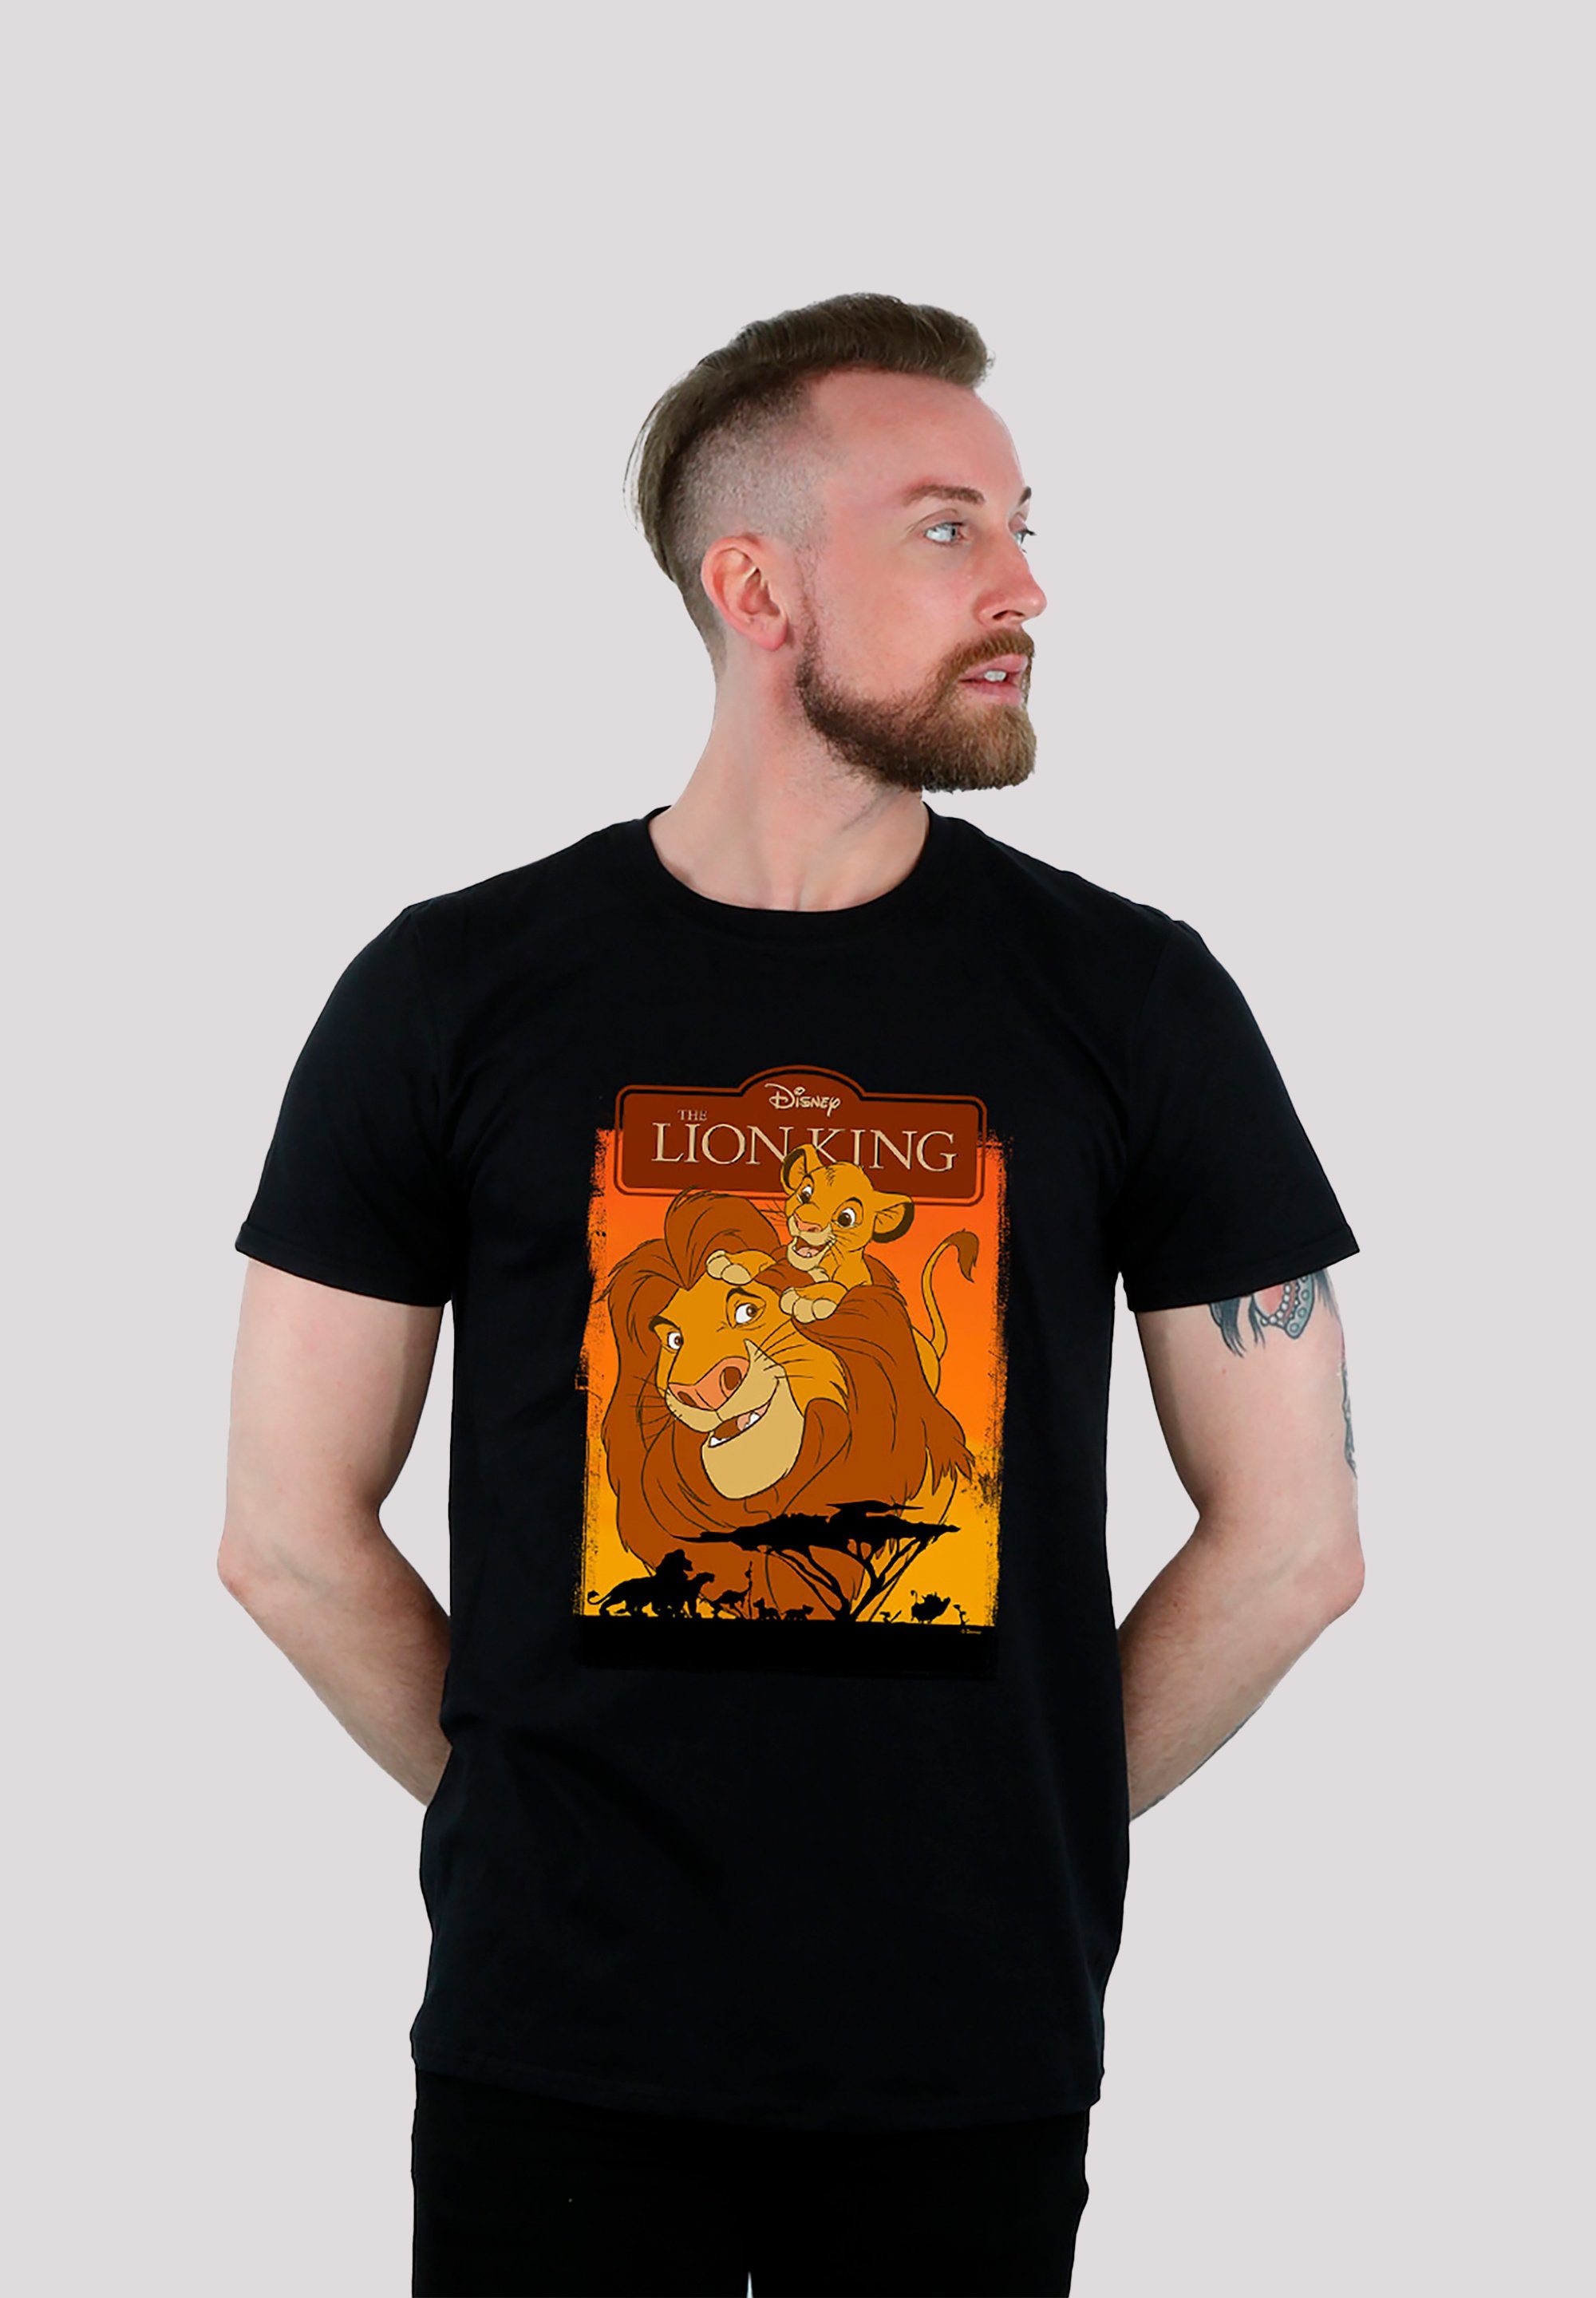 Löwen F4NT4STIC und T-Shirt König Disney Print Simba der Mufasa